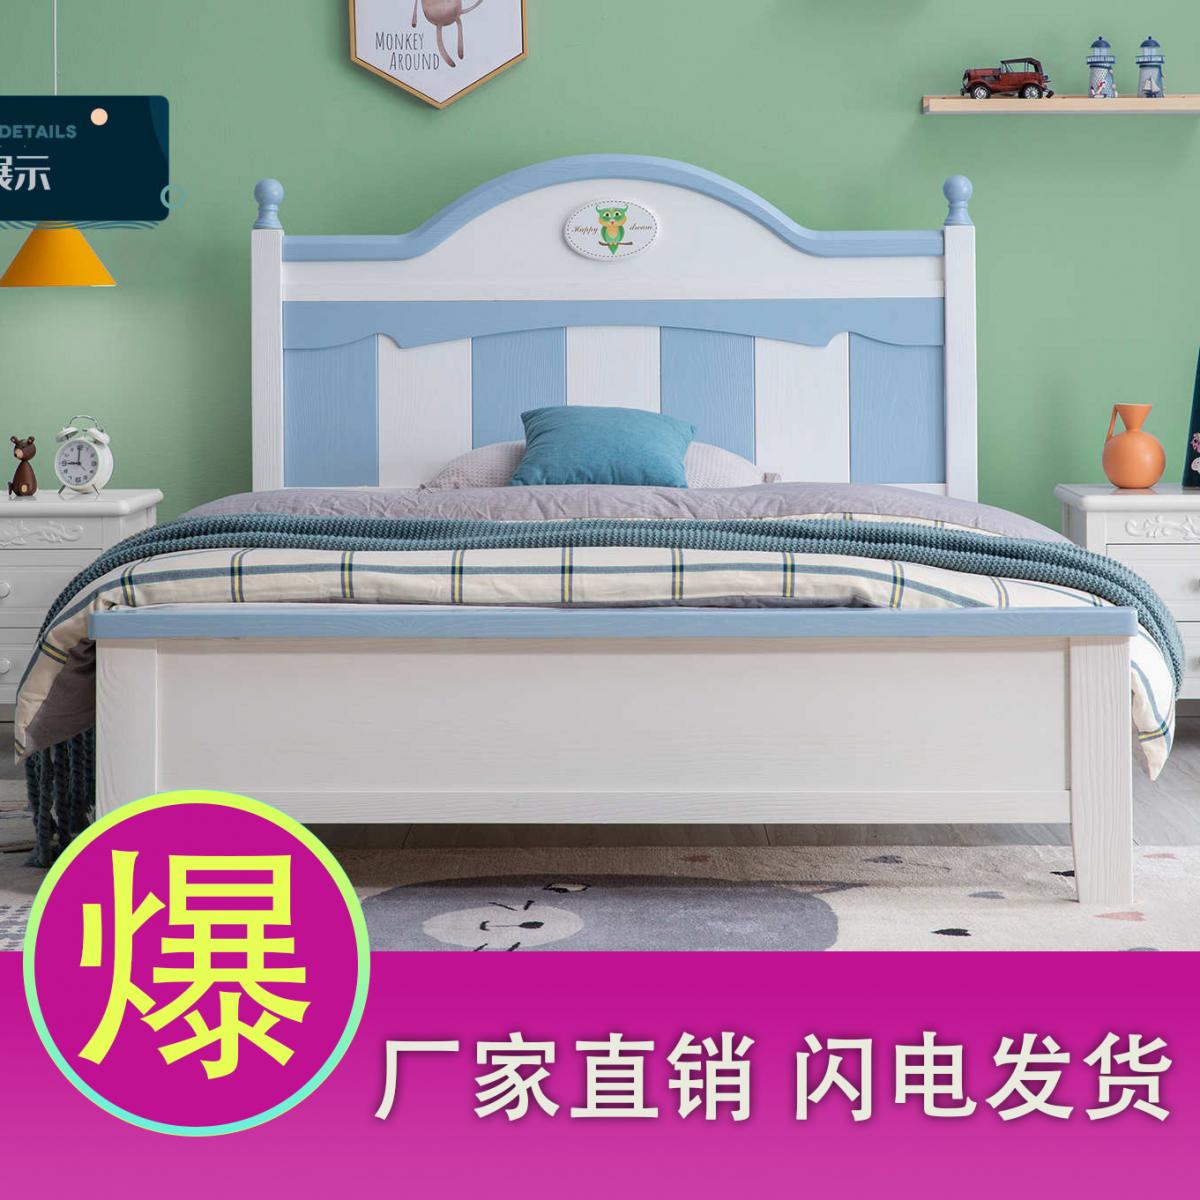 儿童床男孩单人床白色加蓝色简约床美式全实木床1.2米1.5米公主床女孩小学生